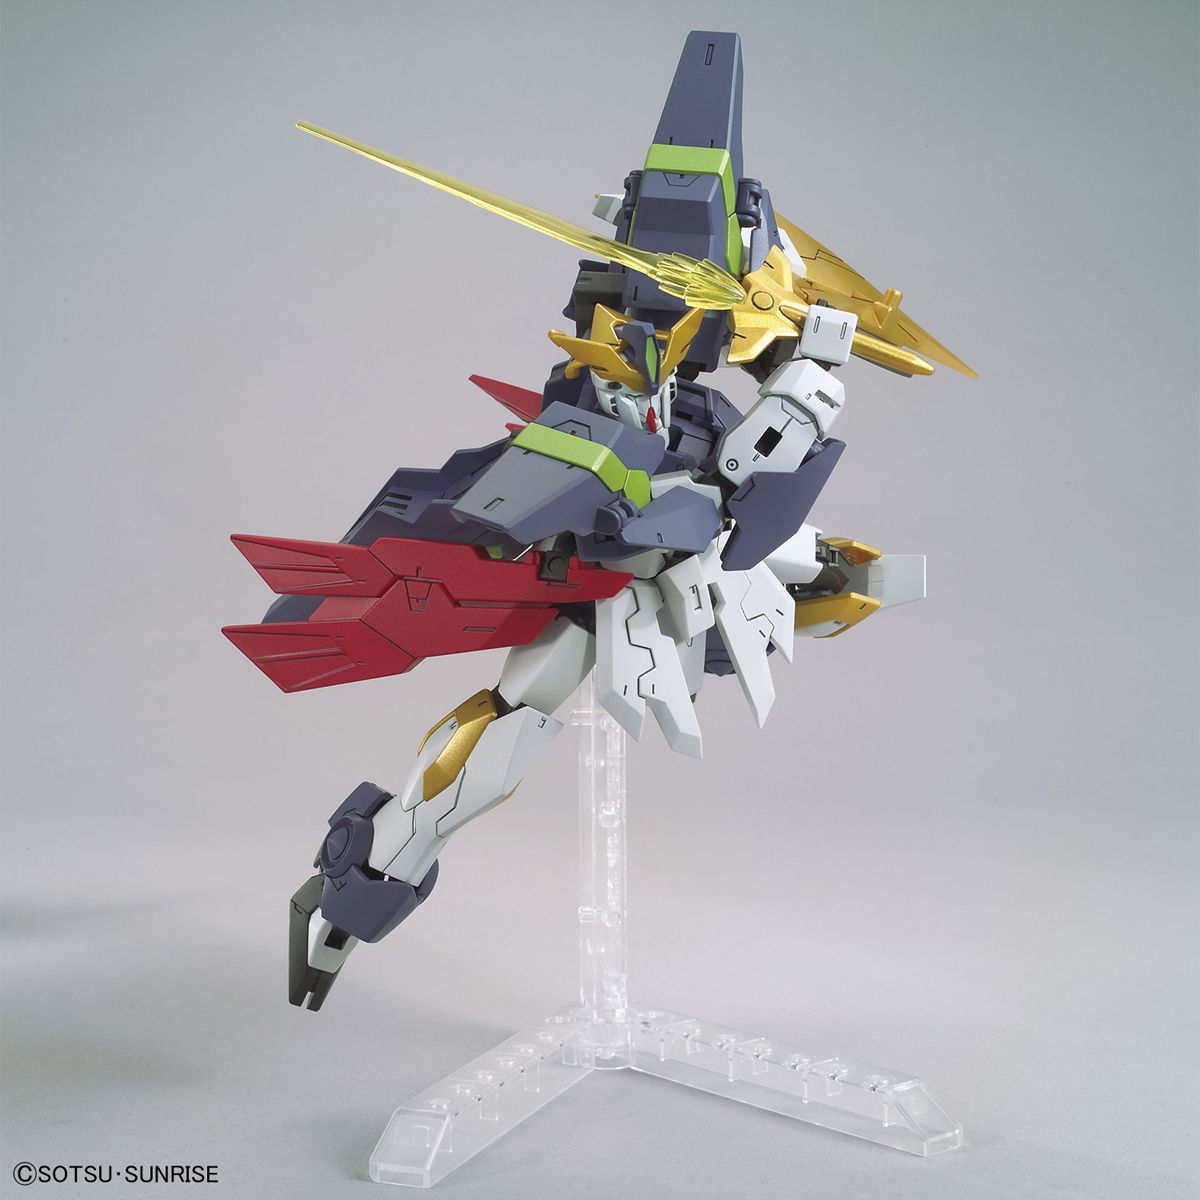 HGBD:R 1/144 Gundam Aegis Knight - Glacier Hobbies - Bandai